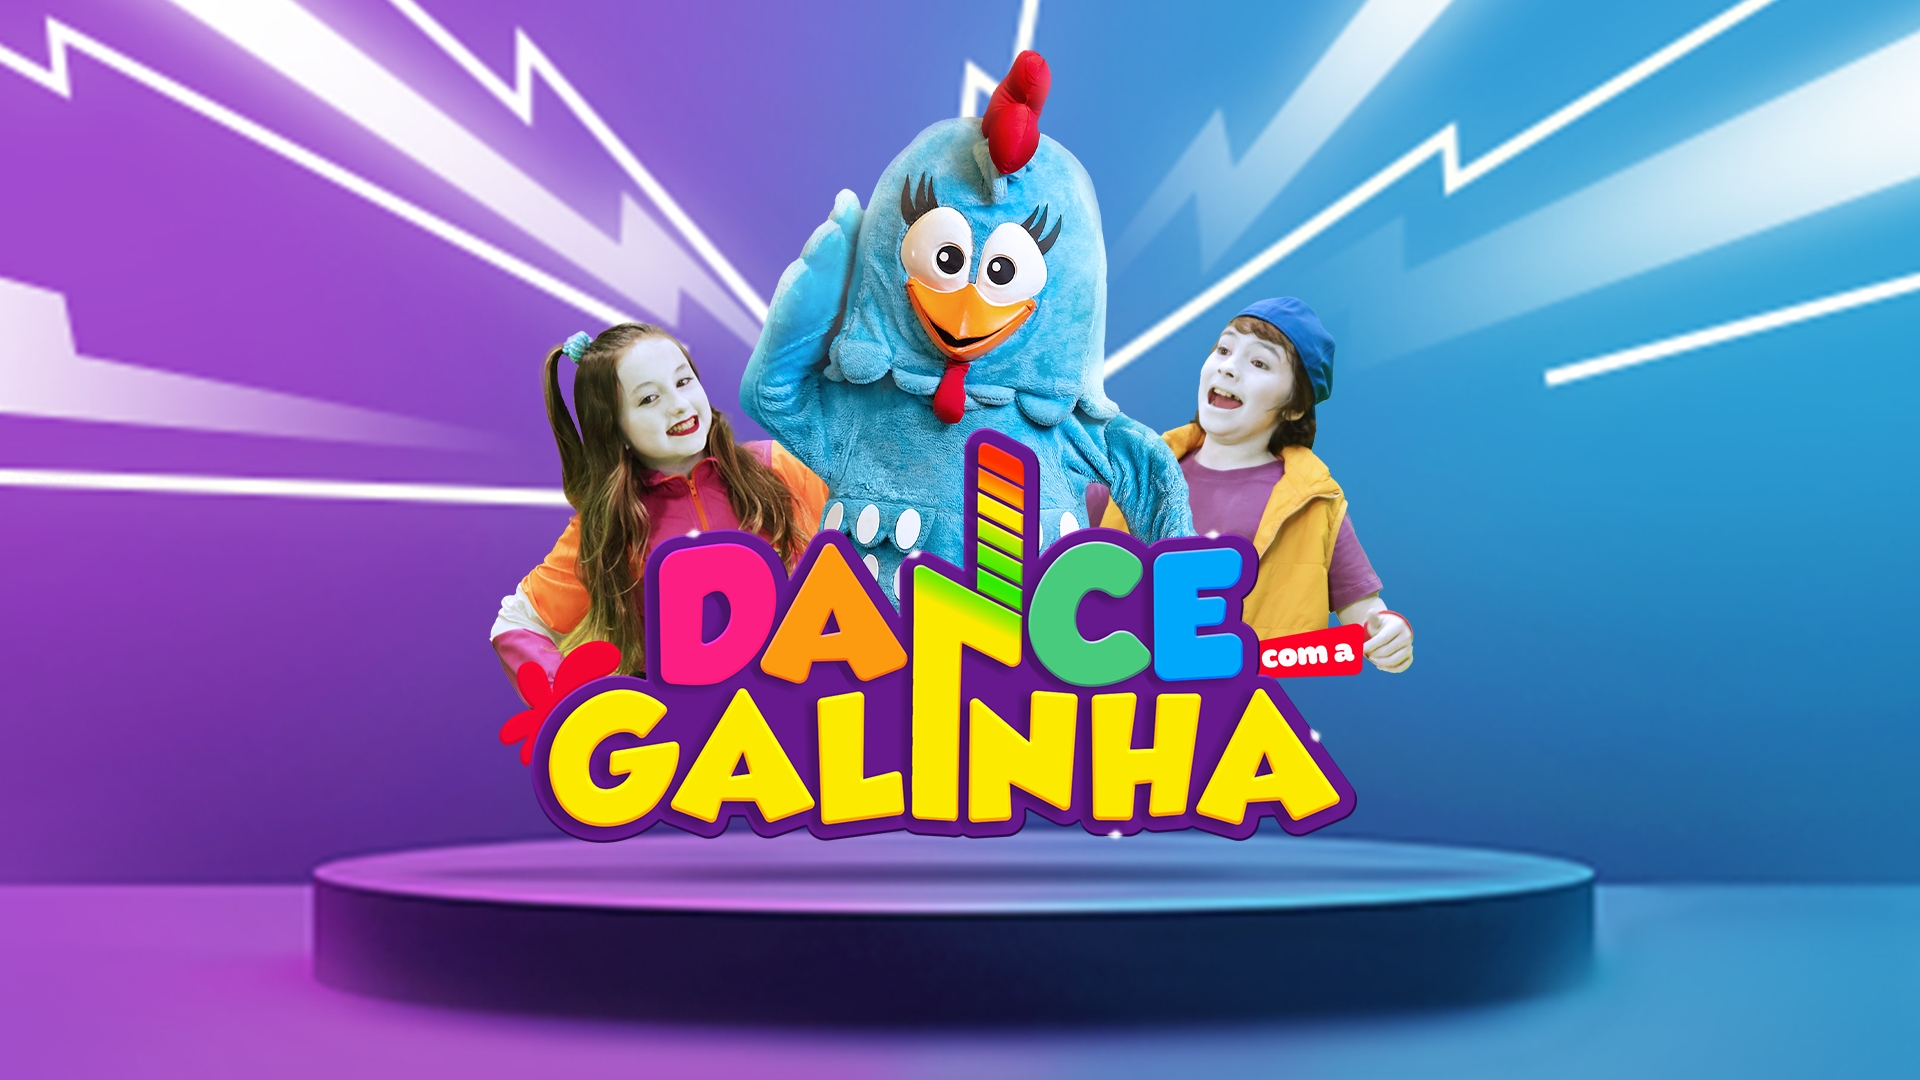 Galinha Pintadinha, Mix entertainment